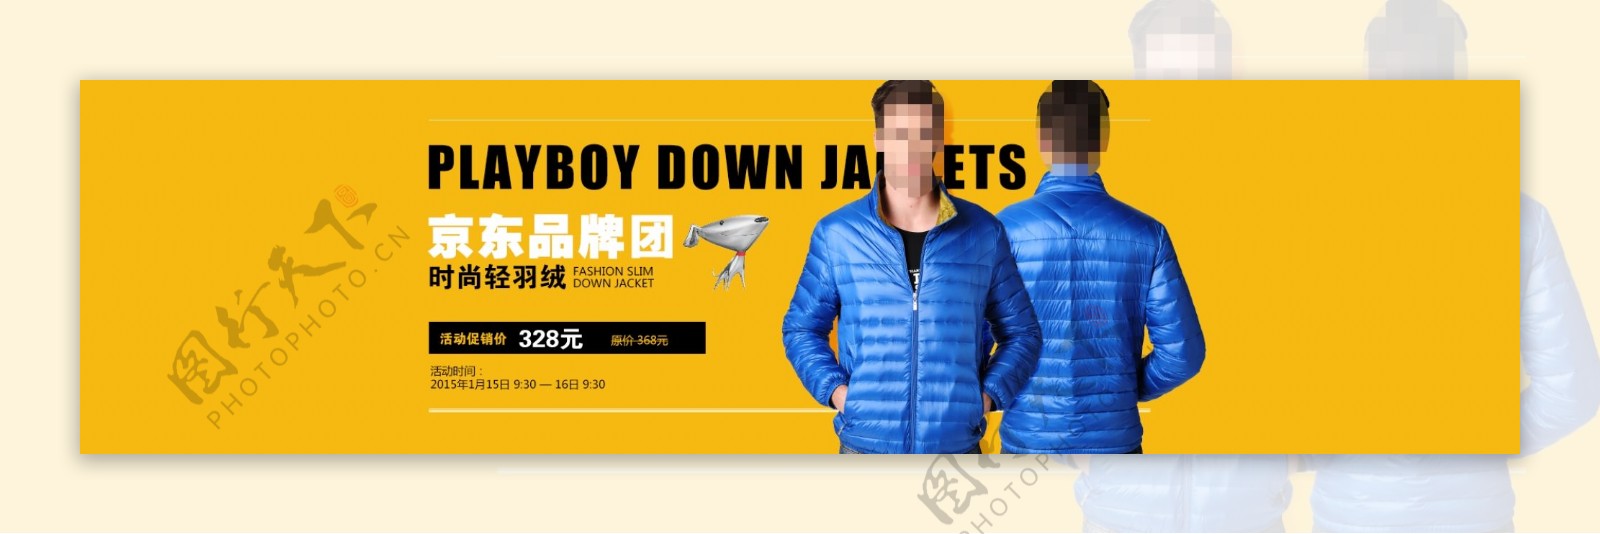 淘宝京东男士外套促销海报设计PSD素材